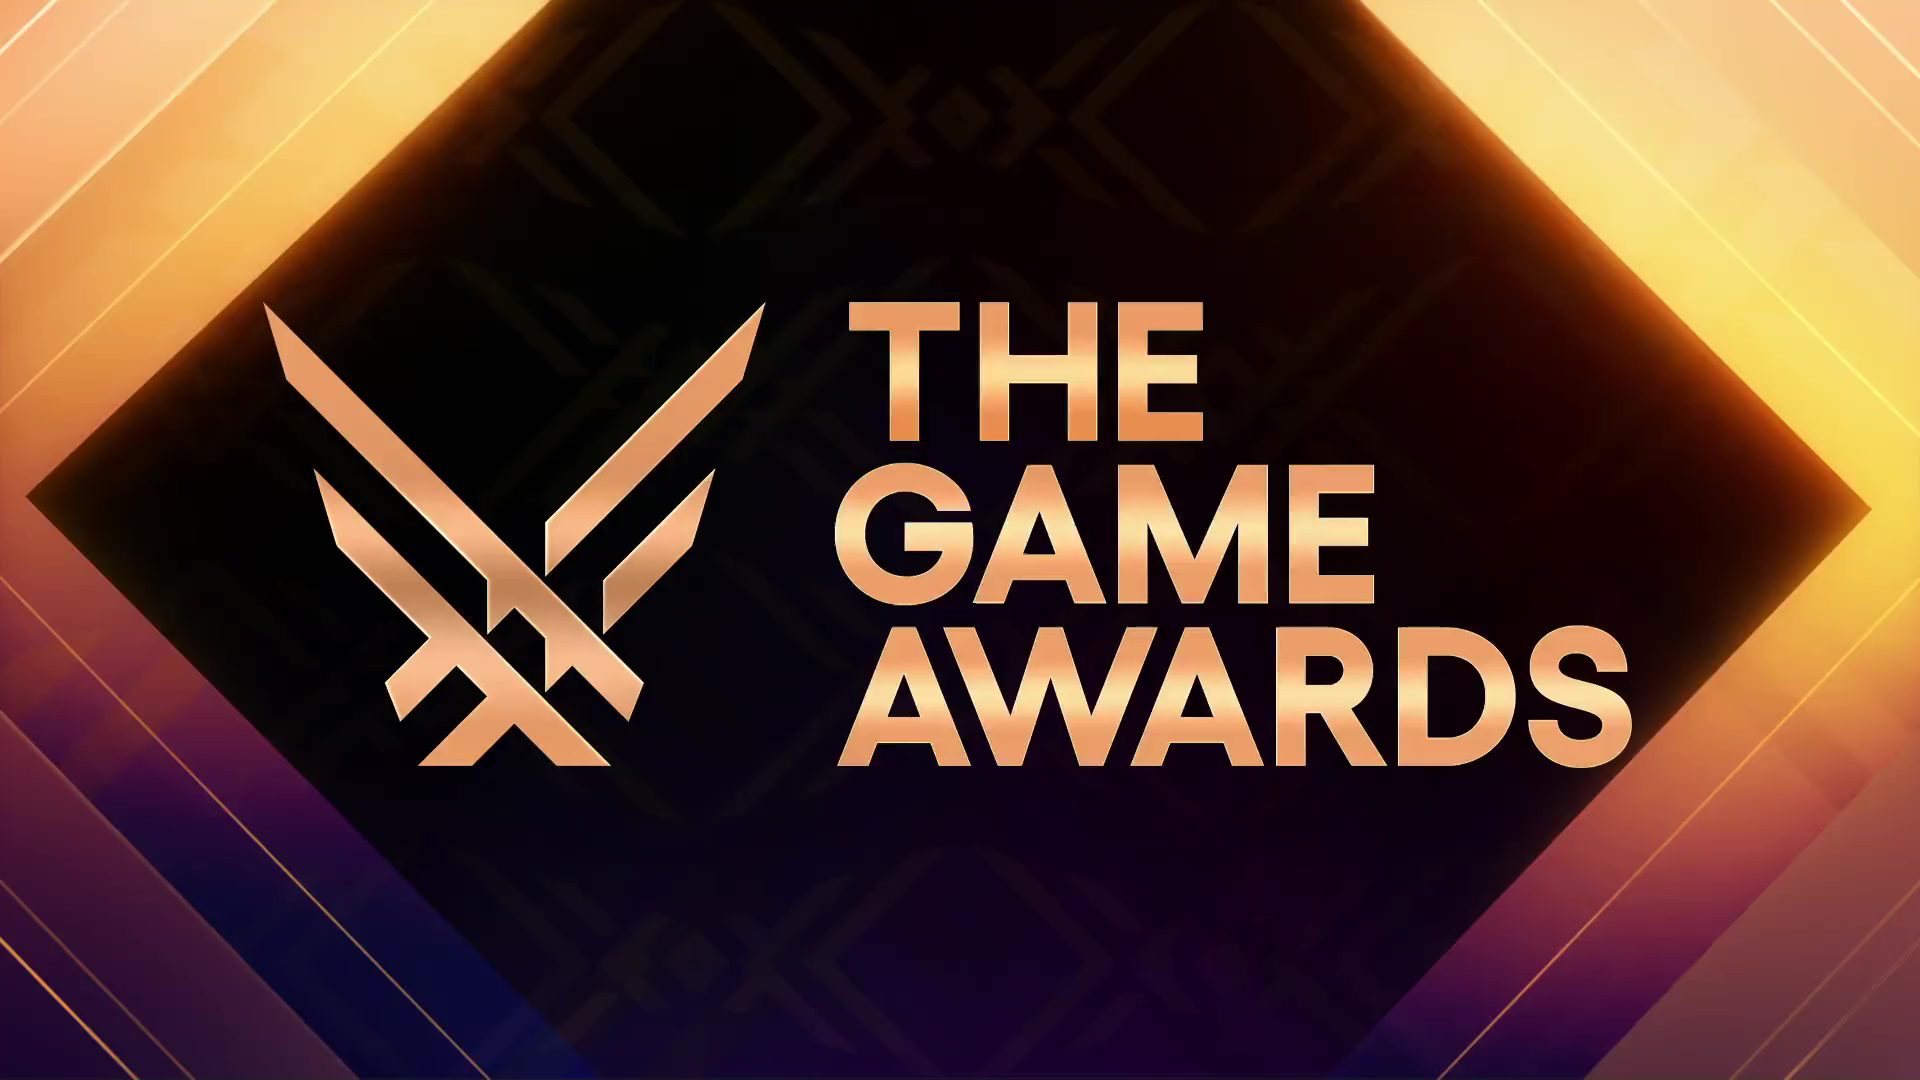 Brazil Game Awards 2022 anuncia lista de vencedores - Nintendo Blast